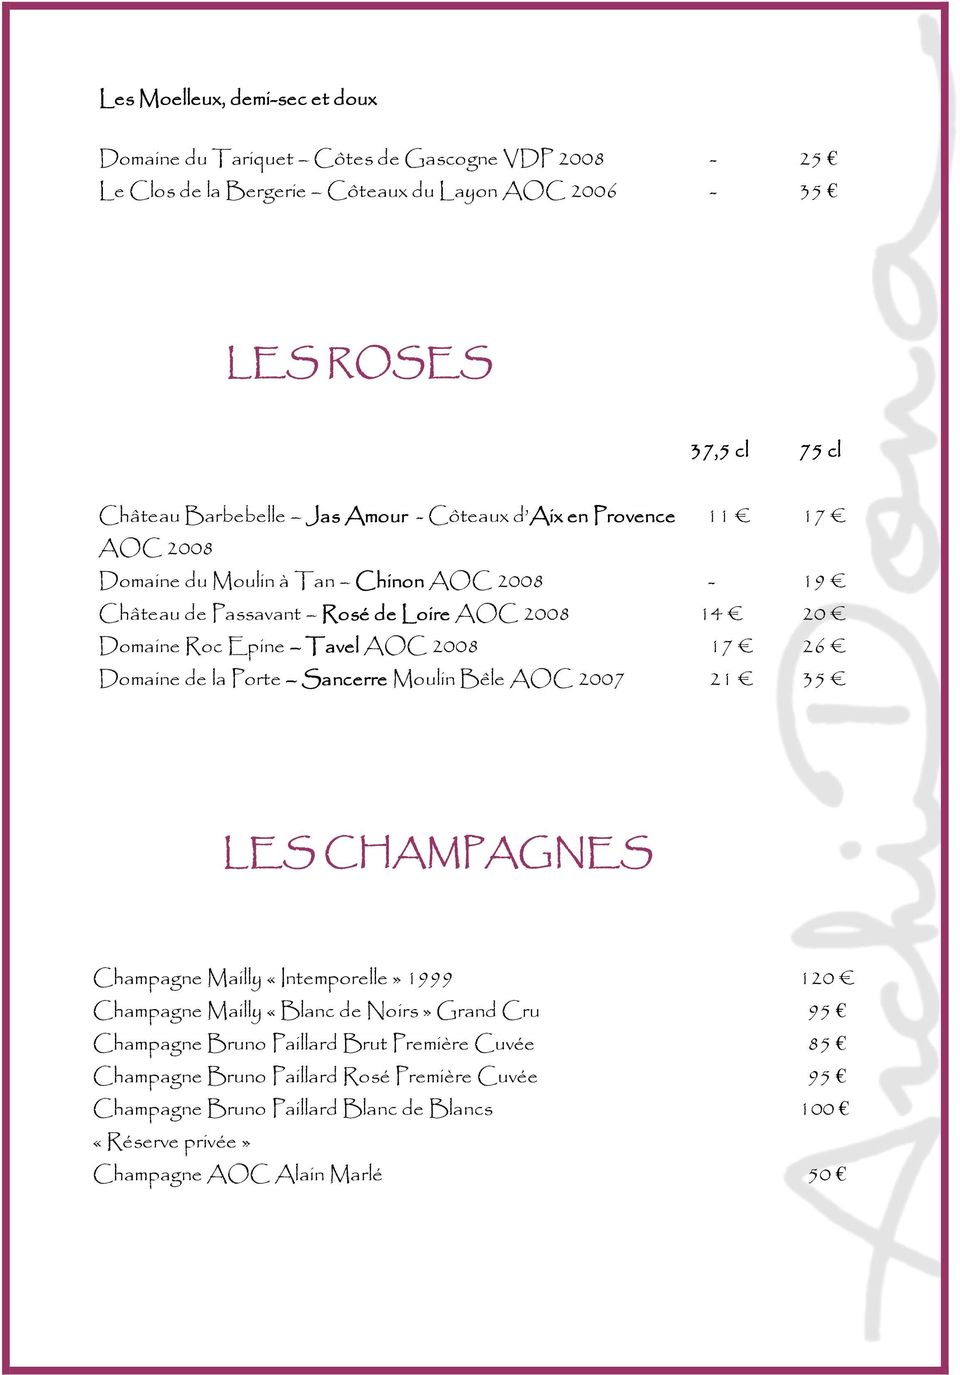 2008 17 26 Domaine de la Porte Sancerre Moulin Bêle AOC 2007 21 35 LES CHAMPAGNES Champagne Mailly «Intemporelle» 1999 120 Champagne Mailly «Blanc de Noirs» Grand Cru 95